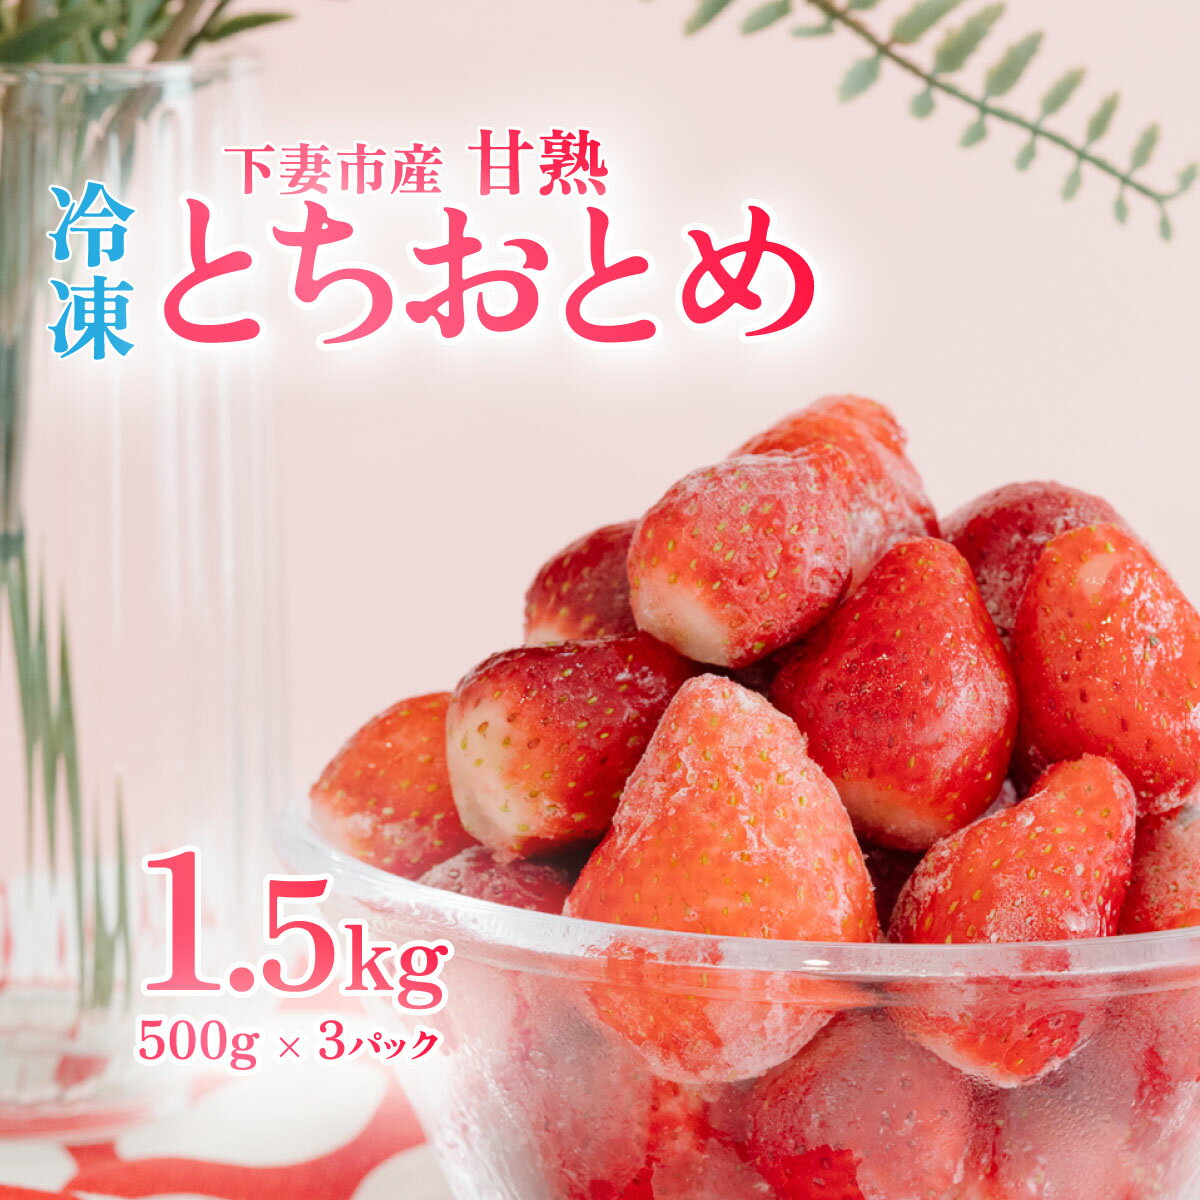 【ふるさと納税】【訳あり】 冷凍いちご 1.5kg (500